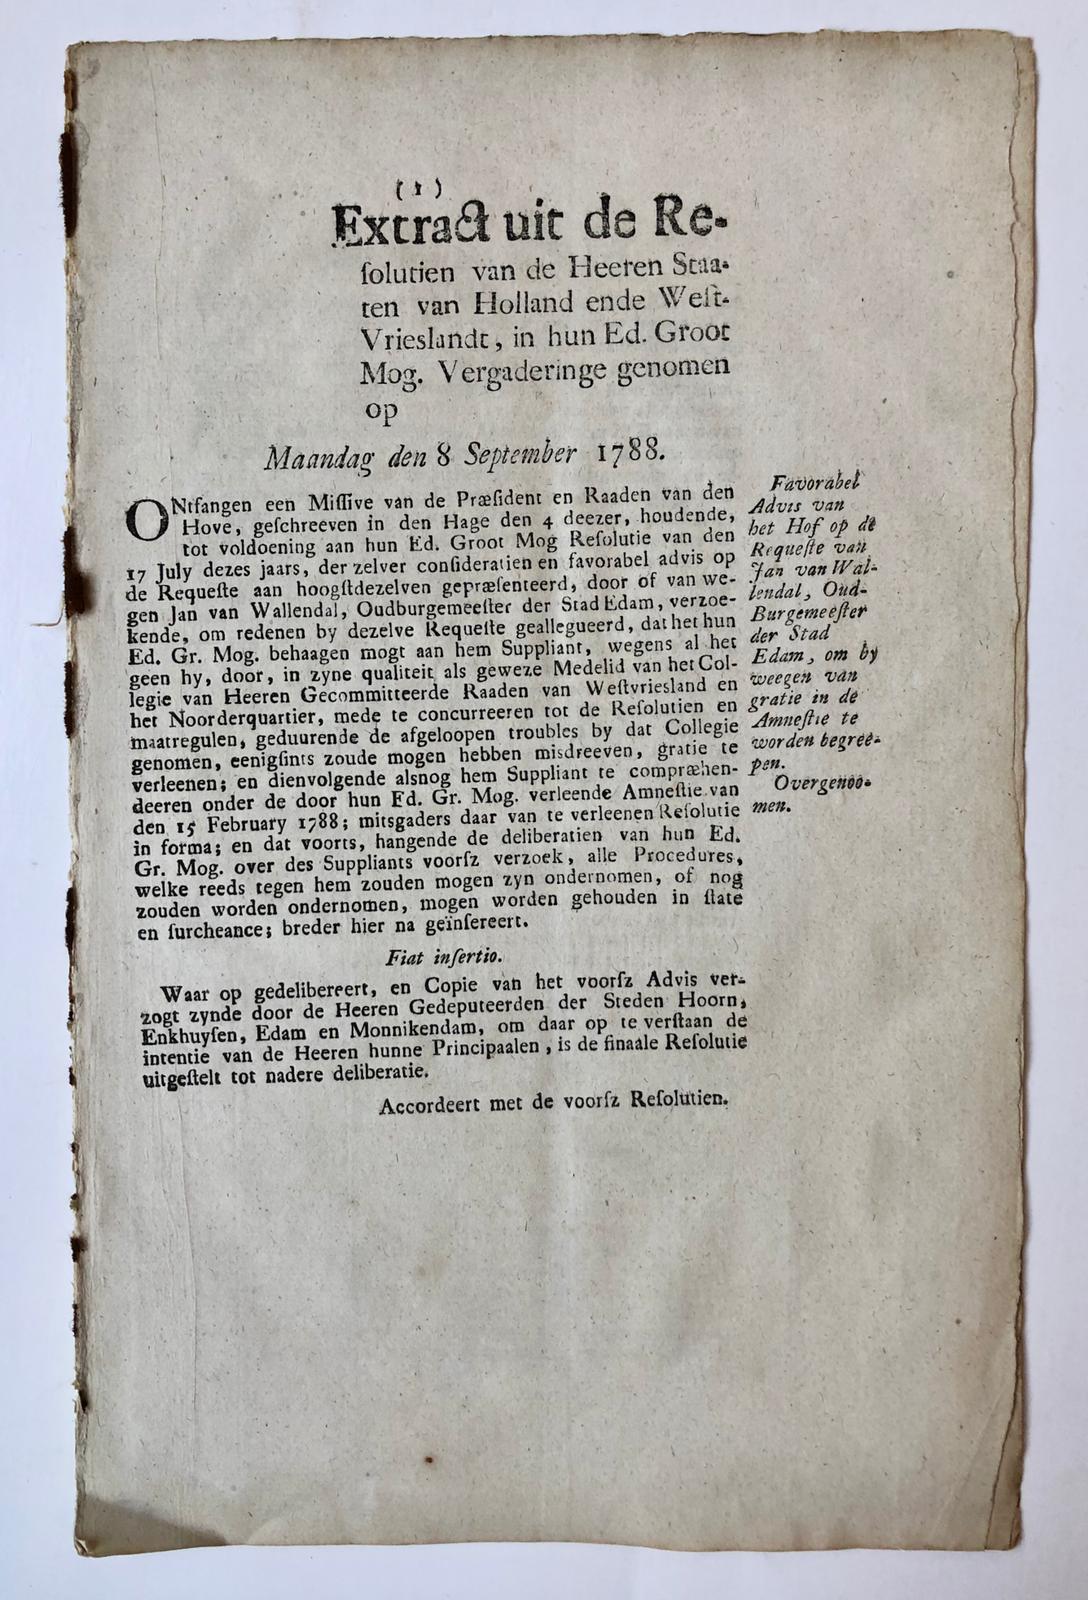 [PRINTED PUBLICATION, 1788] Gratieverlening van het Hof van Holland dd 8-9-1788, voor Jan van Wallendal, oud burgemeester van Edam voor politiek gedrag in 1787. Gedrukt. Folio, 6p.